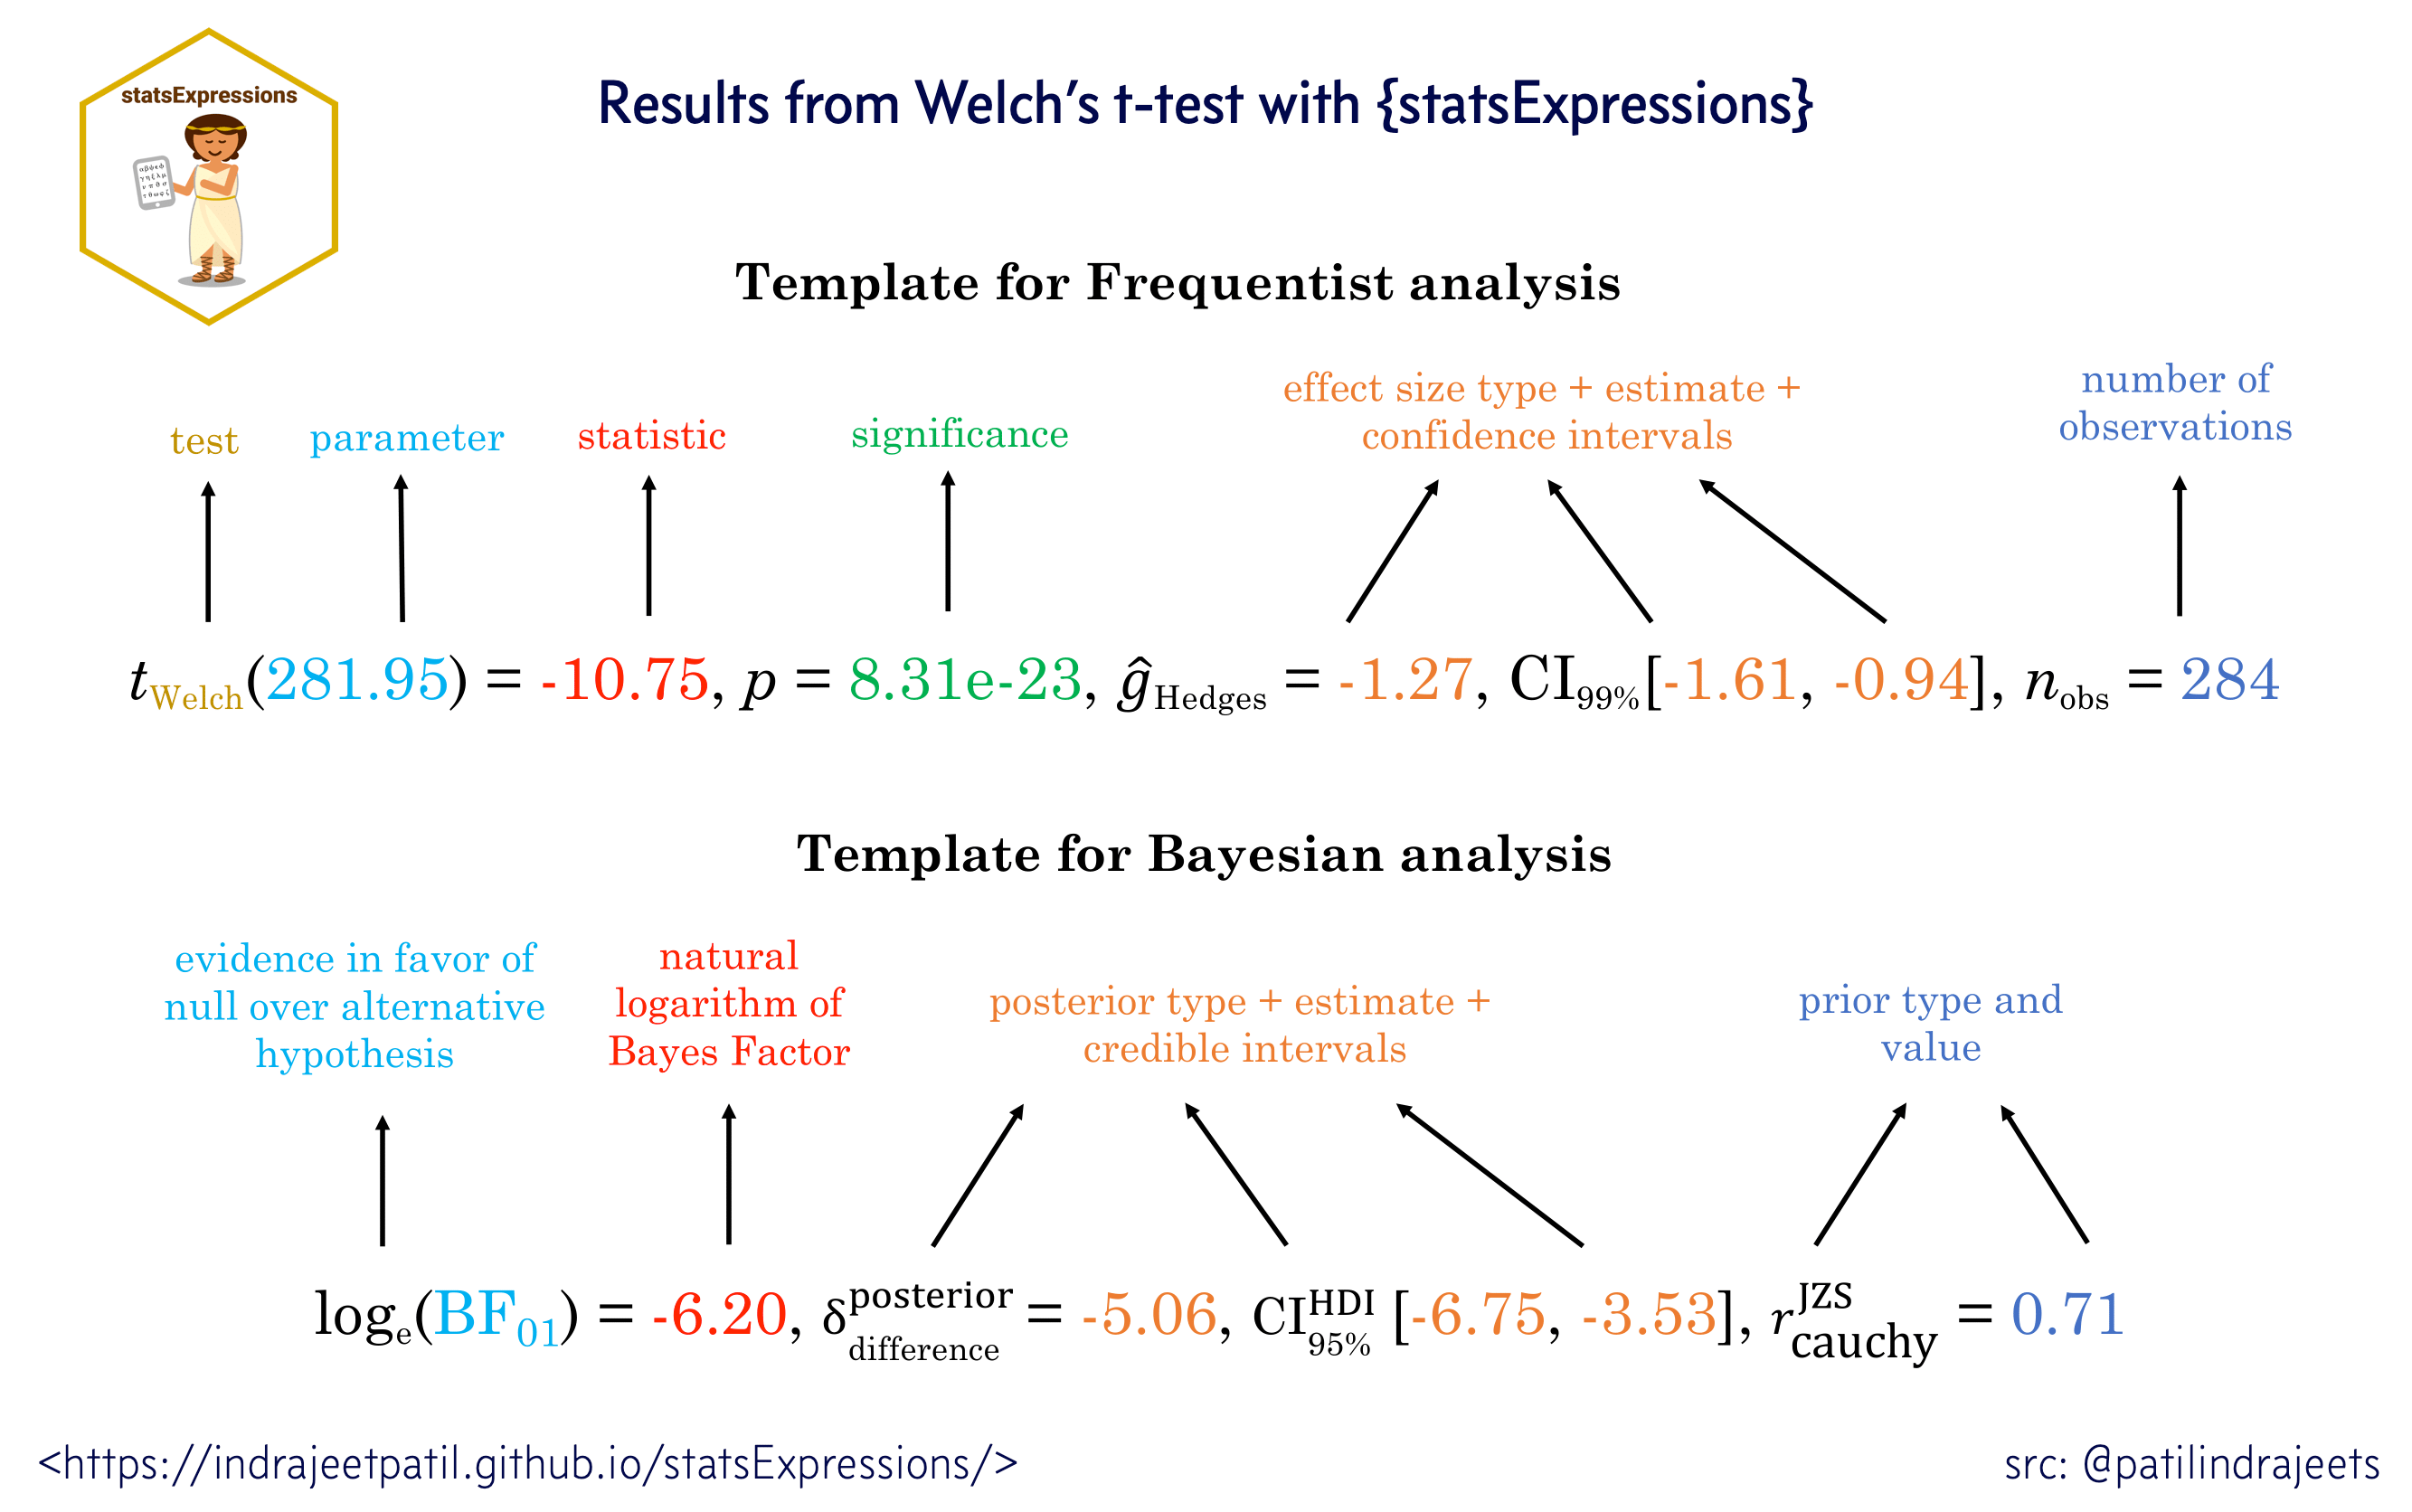 Welch's t-test